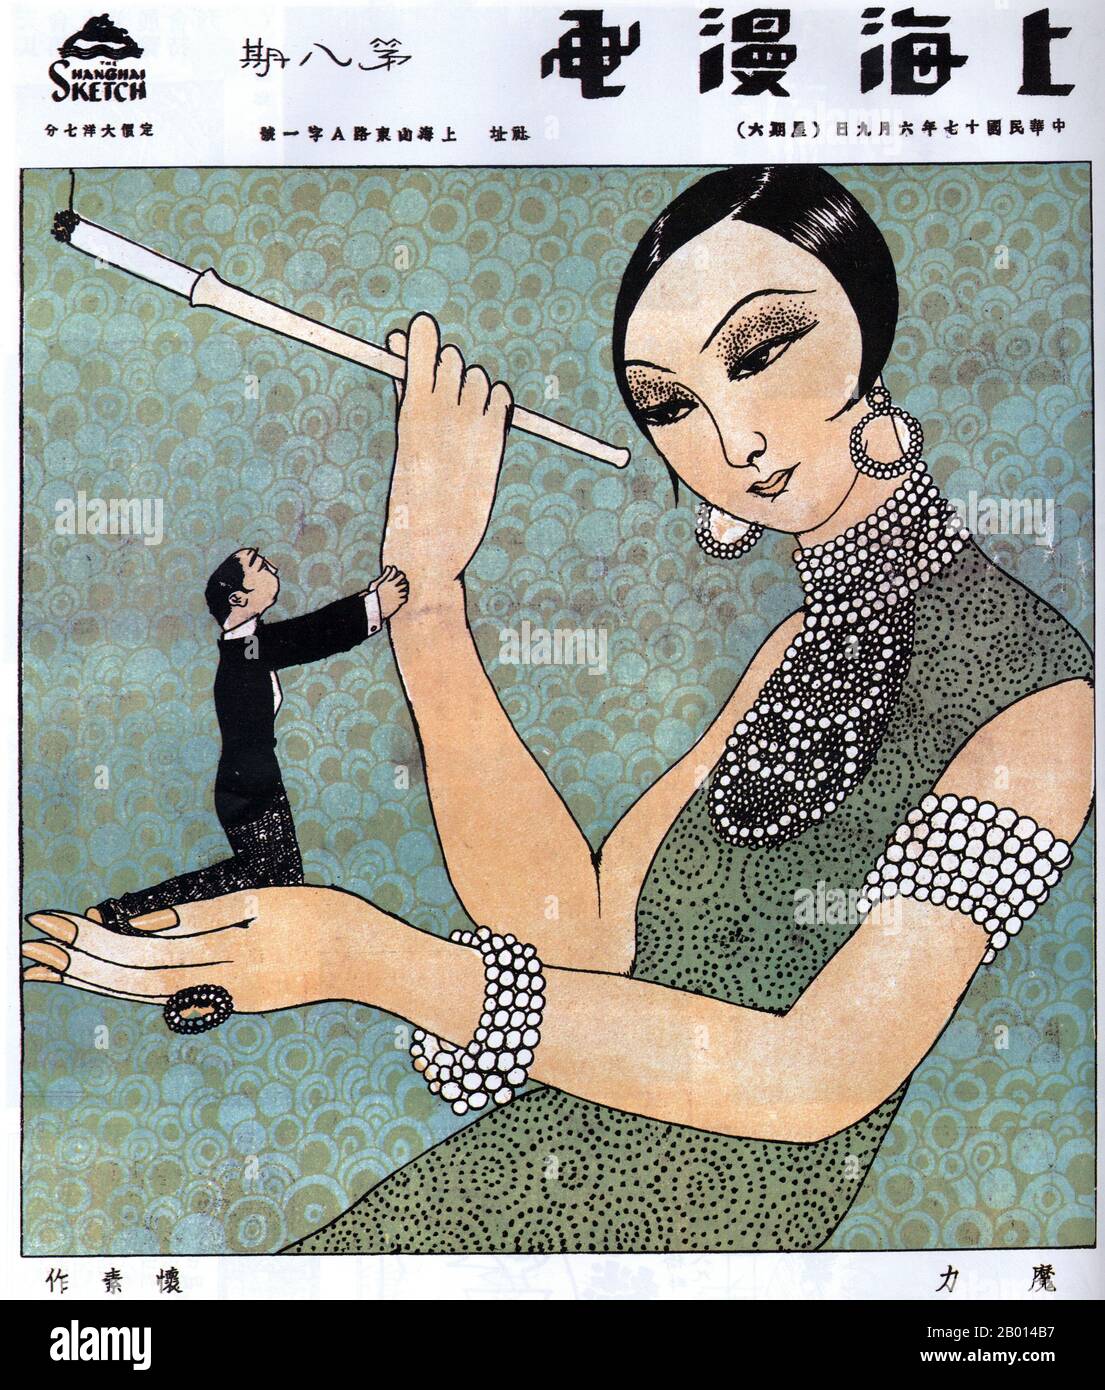 Cina: Un'immagine di 'Shanghai Manhua' dal titolo 'Fascination' mostra una socialite femminile elaborata e vestita che tiene un porta sigarette in una mano e un maschio sottomissivo e supplicante nell'altra. Di Huaisu, 9 giugno 1928. Il pittorico 'Shanghai Manhua' (Shanghai Sketch), pubblicato tra il 21 aprile 1928 e il 7 giugno 1930, è stato un misto di disegni, fotografie e immagini che spaziano dalla pubblicità alla critica sociale e alla caricatura politica. Shanghai Manhua era uno sbocco per i cartoonisti professionisti e maestri di schizzi, generalmente di una garde avanguardistica o di natura progressista. Foto Stock